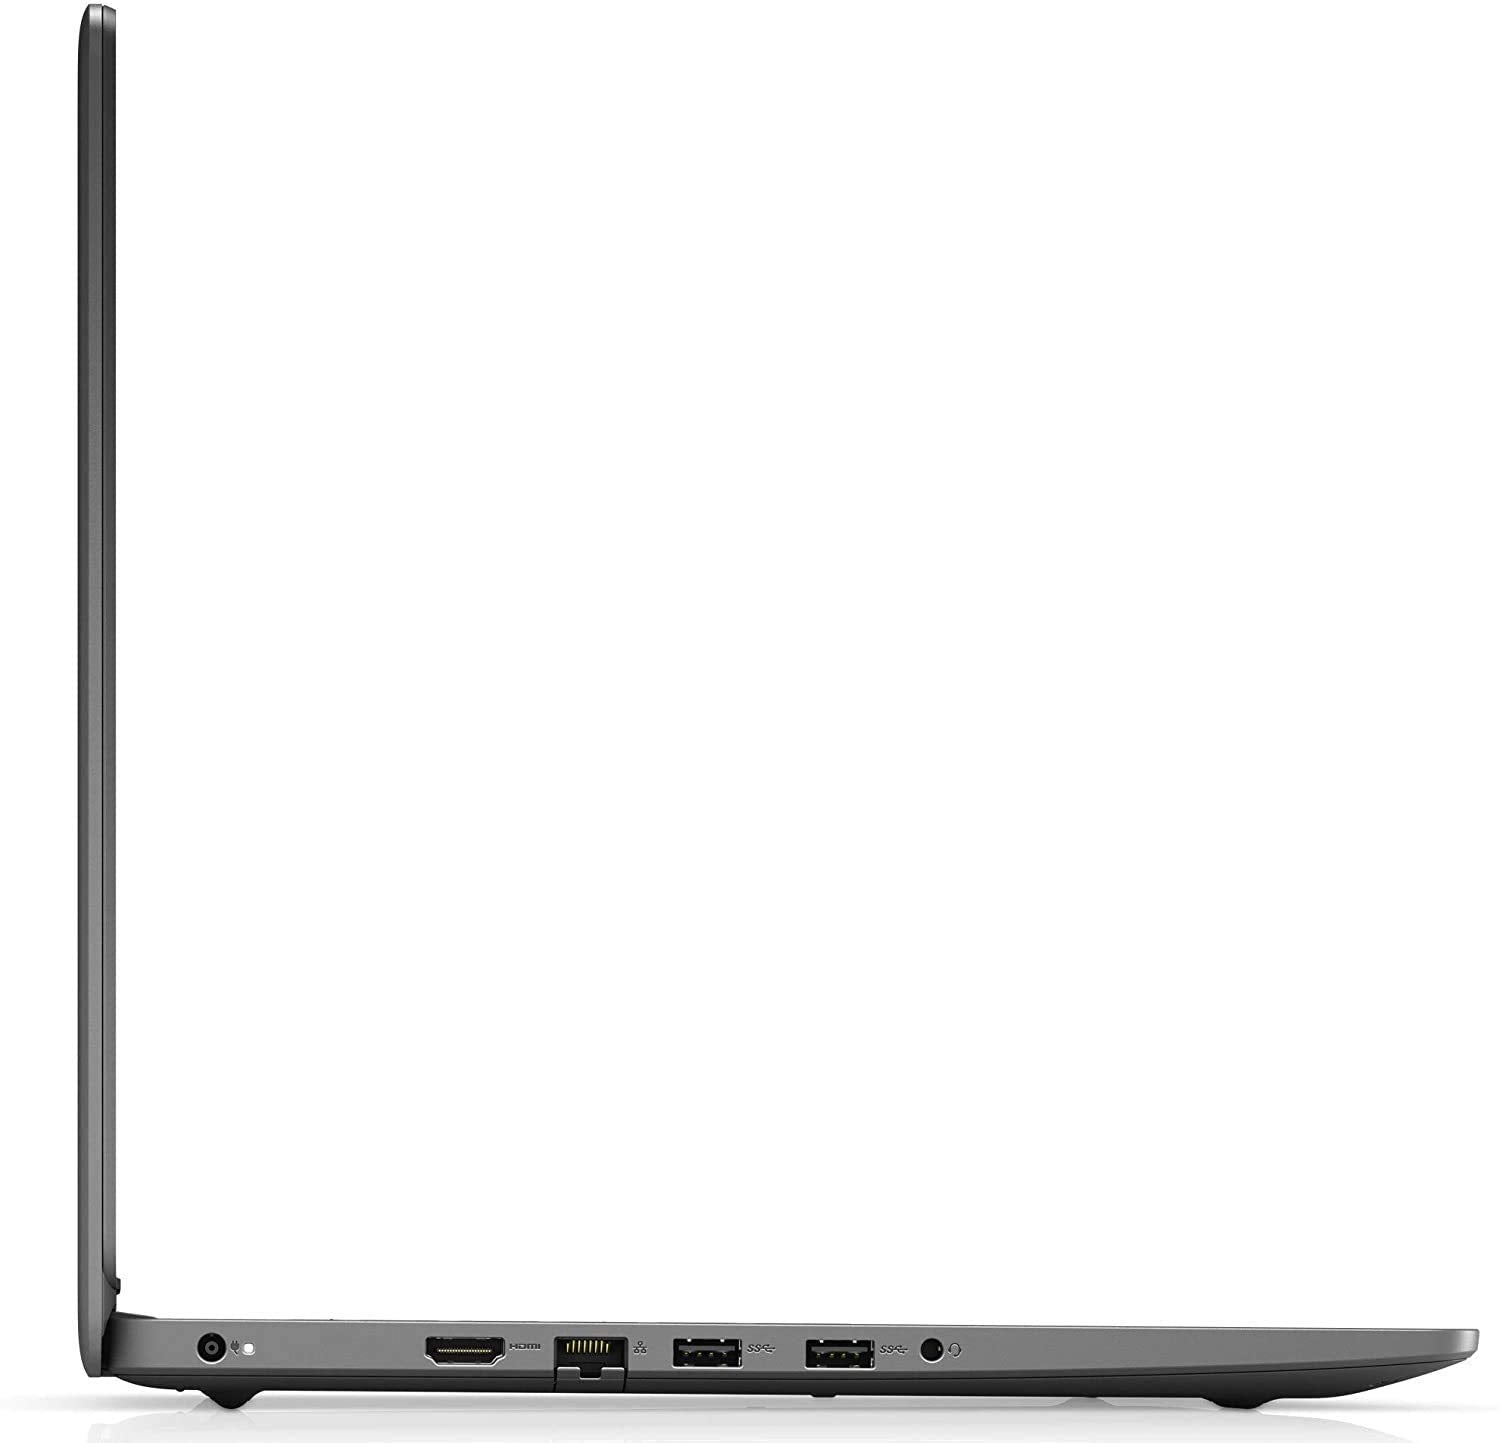 डेल लैपटॉप इंस्पिरॉन 3501, इंटेल कोर i5, 11वीं पीढ़ी, 8GB रैम, 1TB HDD